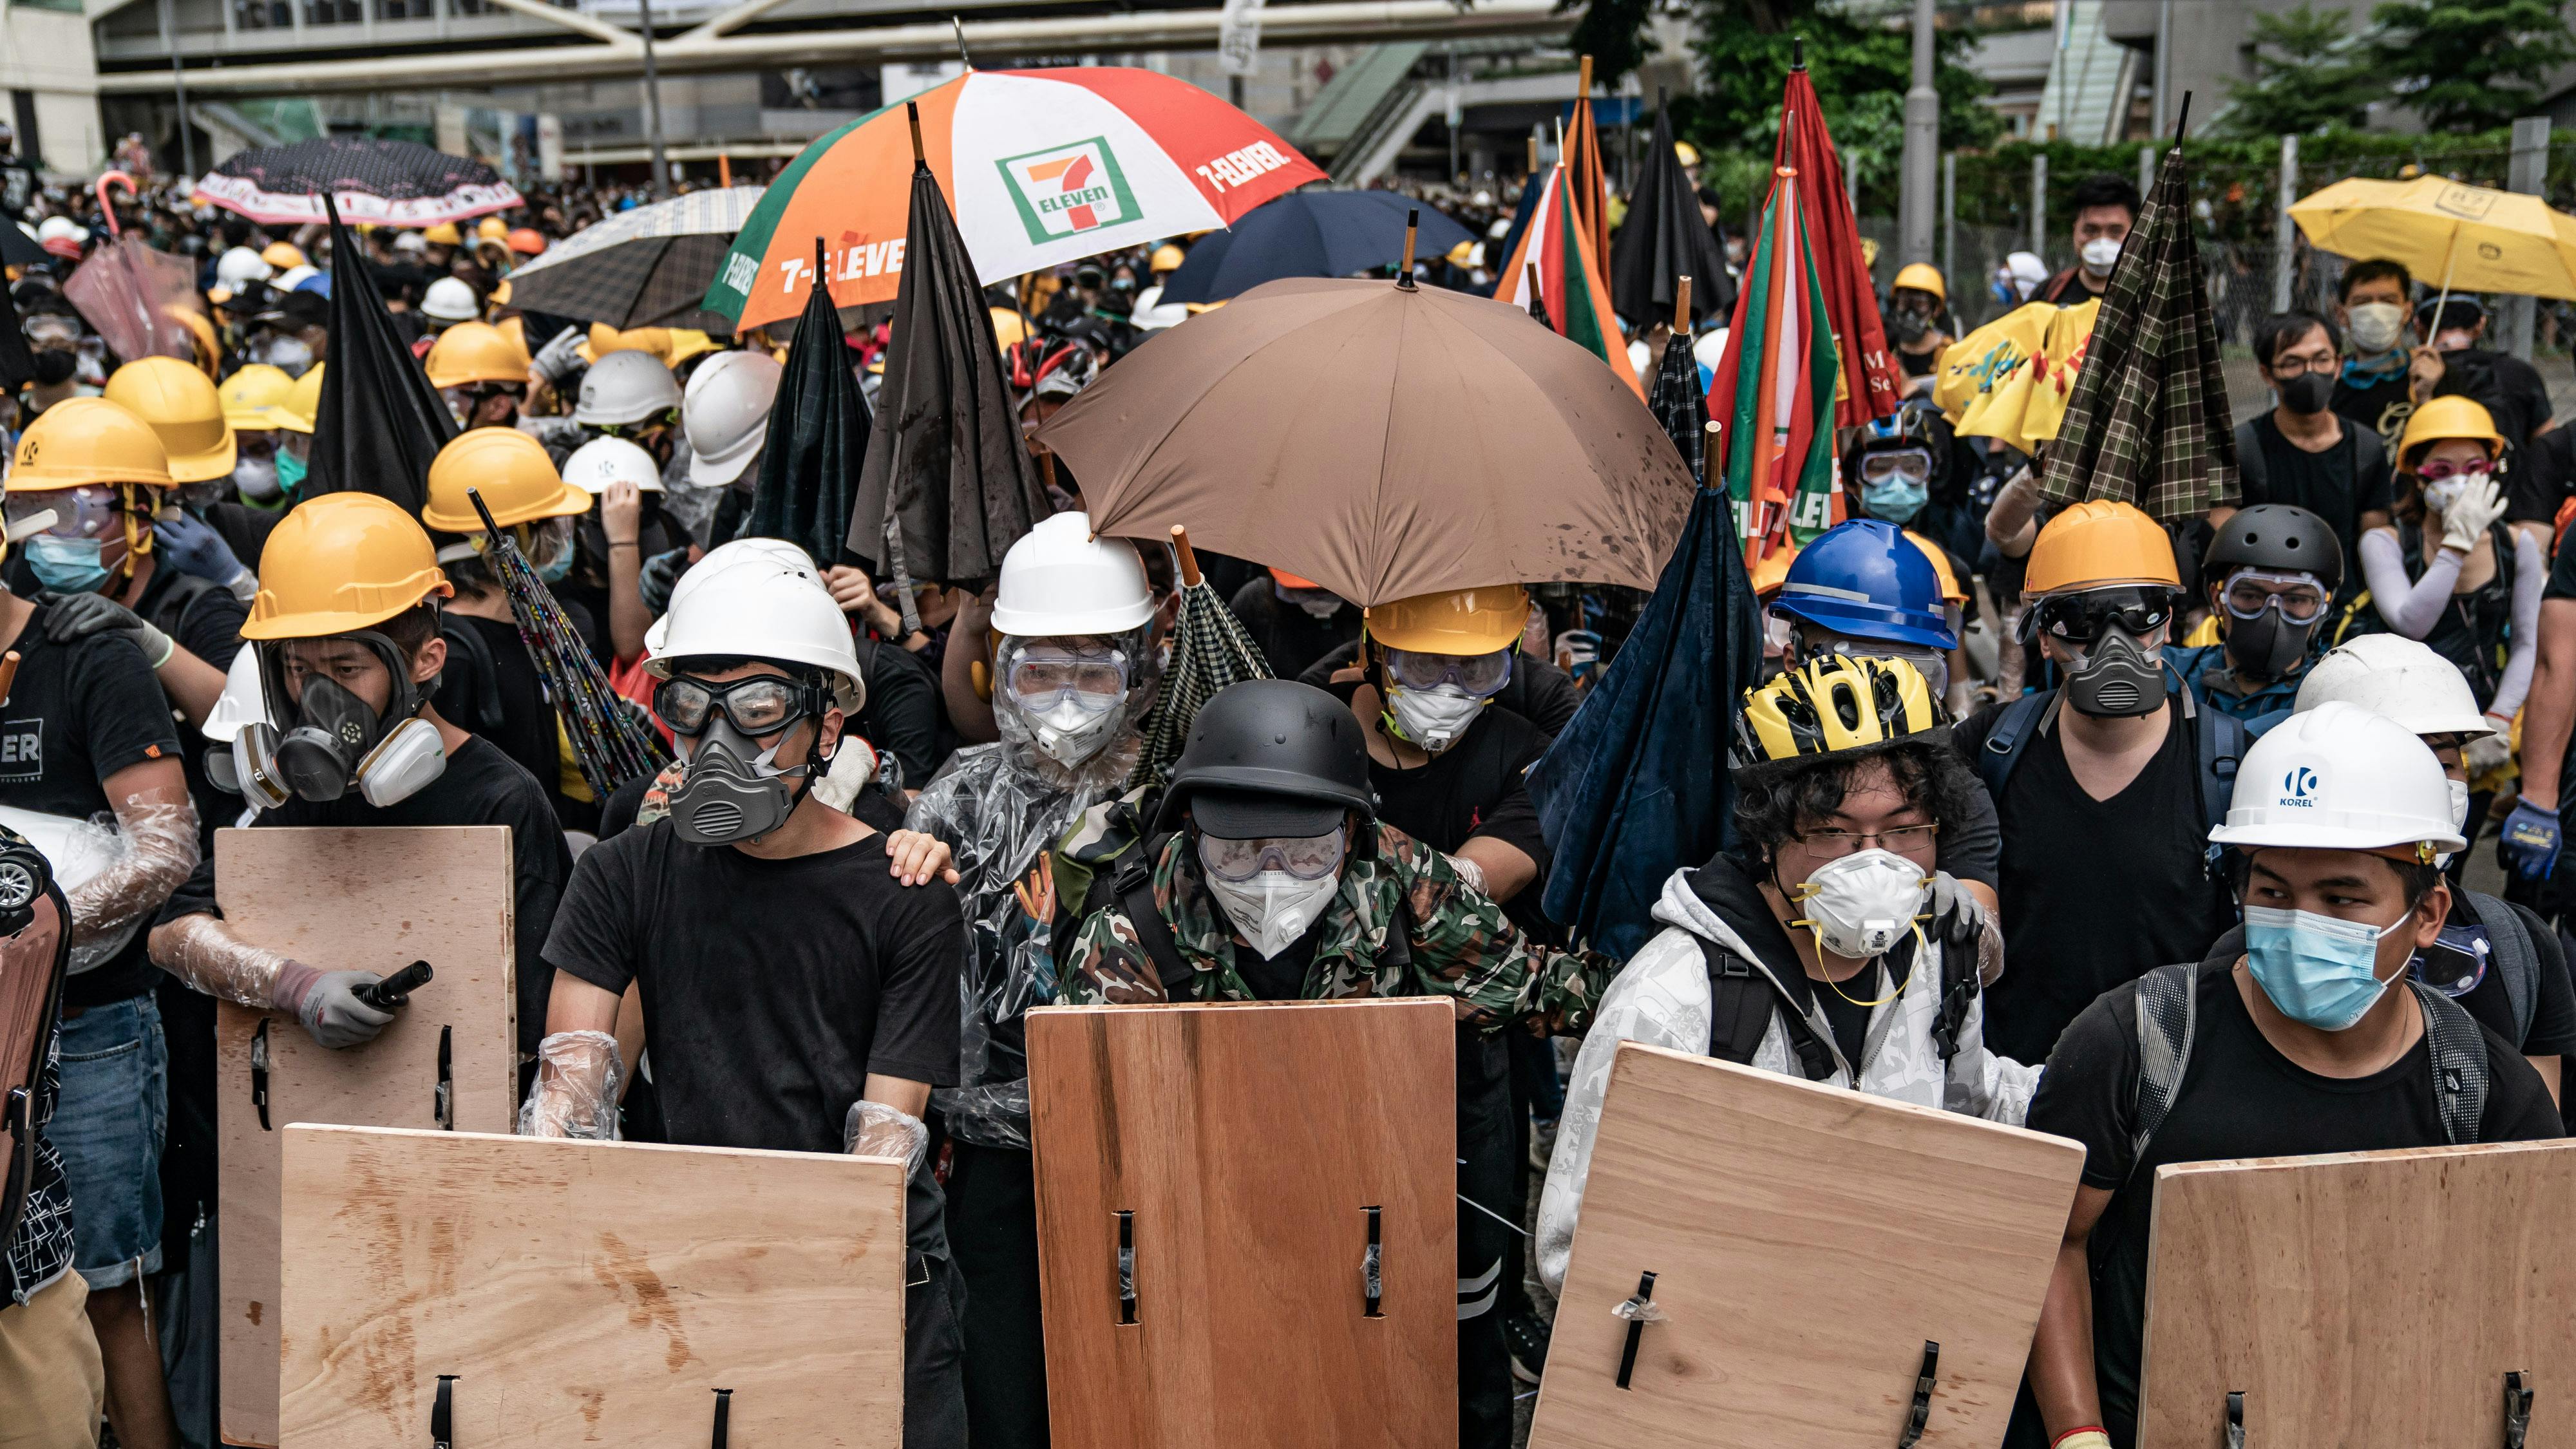 Demonstranten, die gegen das Auslieferungsgesetz protestieren, verteidigen sich mit einem behelfsmäßigen Schild und Schirmen während eines Zusammenstoßes mit der Polizei außerhalb des Legislativratskomplexes.